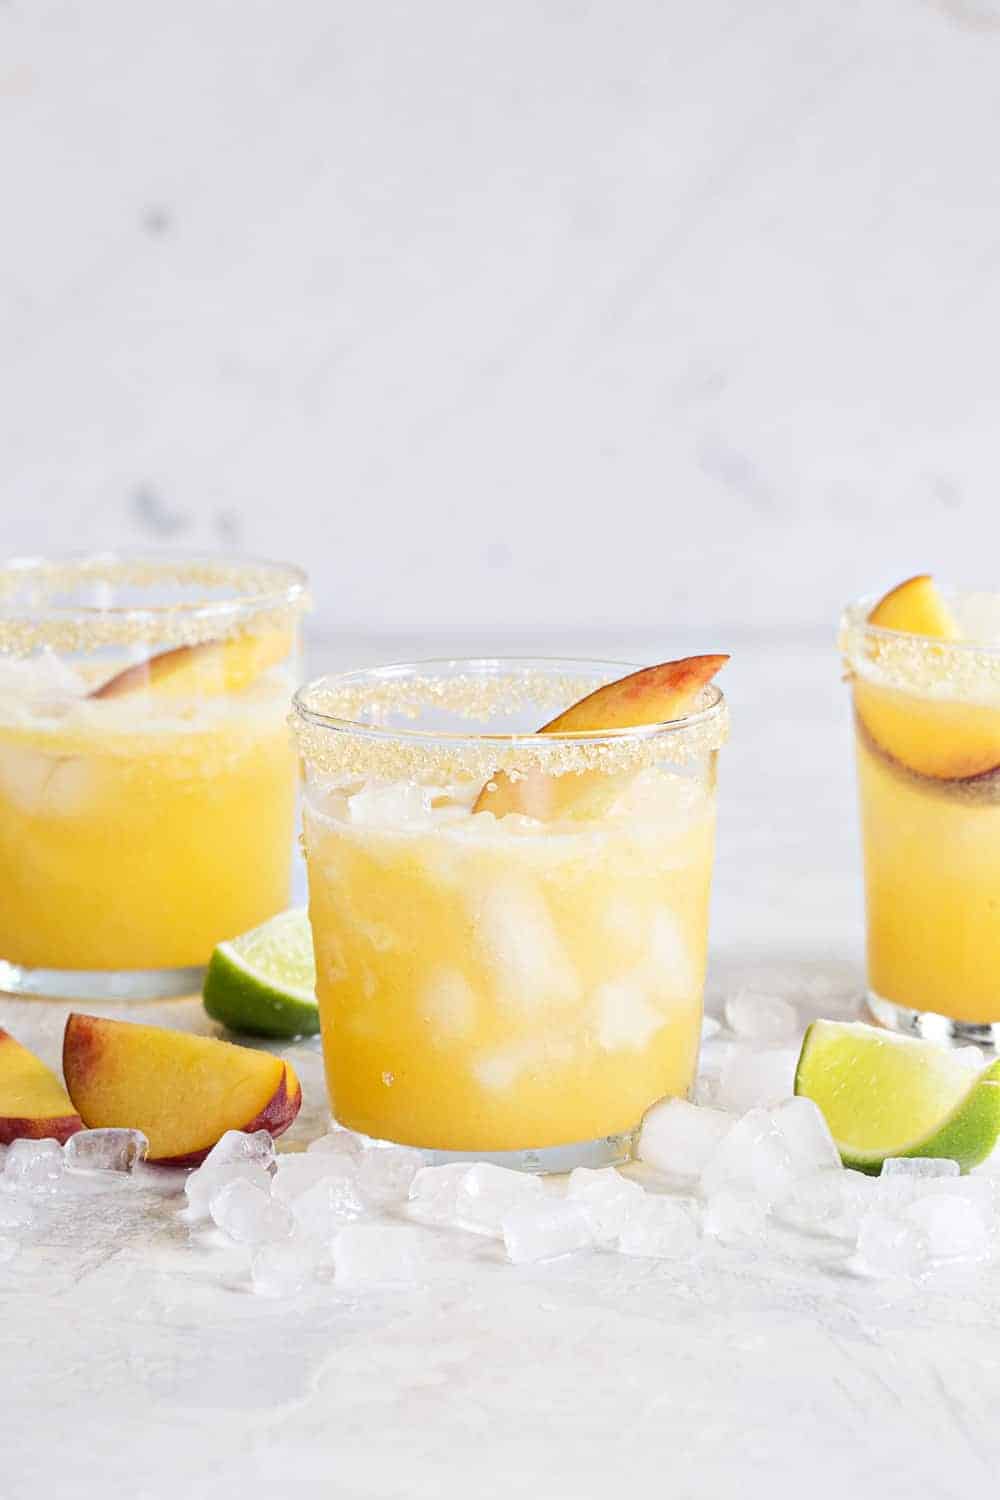 반짝이는 복숭아 마가리타는 여름을 축하하는 완벽한 방법입니다. 그들은 가볍고 달콤하며 신선한 복숭아 맛으로 파열됩니다!'re light, sweet and bursting with fresh peach flavor!